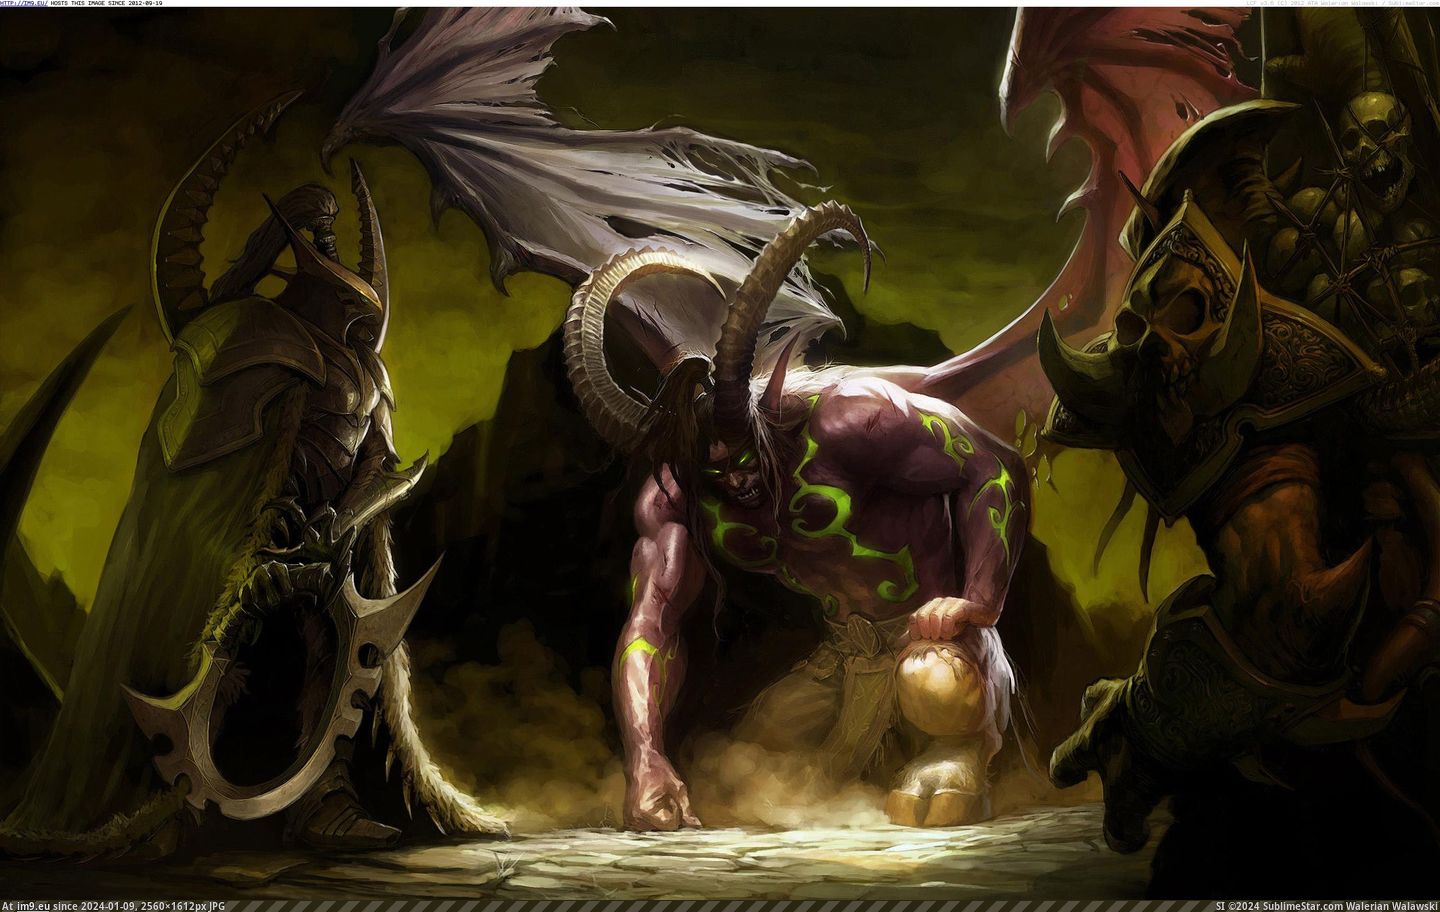 #Game #Video #Warcraft #World Video Game World Of Warcraft 84482 Pic. (Bild von album Games Wallpapers))